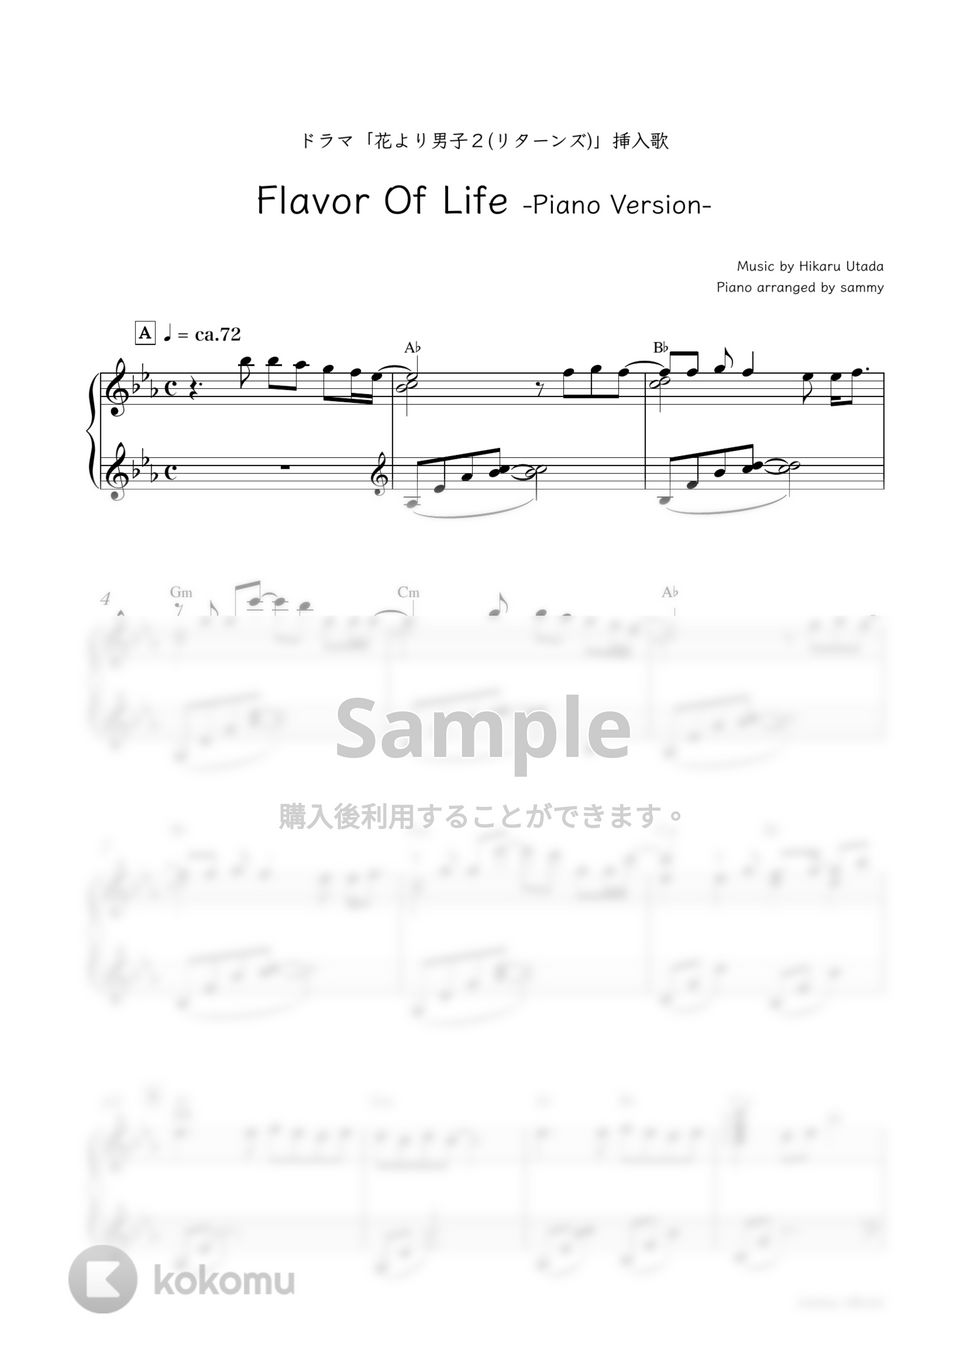 宇多田ヒカル - Flavor Of Life -Piano Version- by sammy